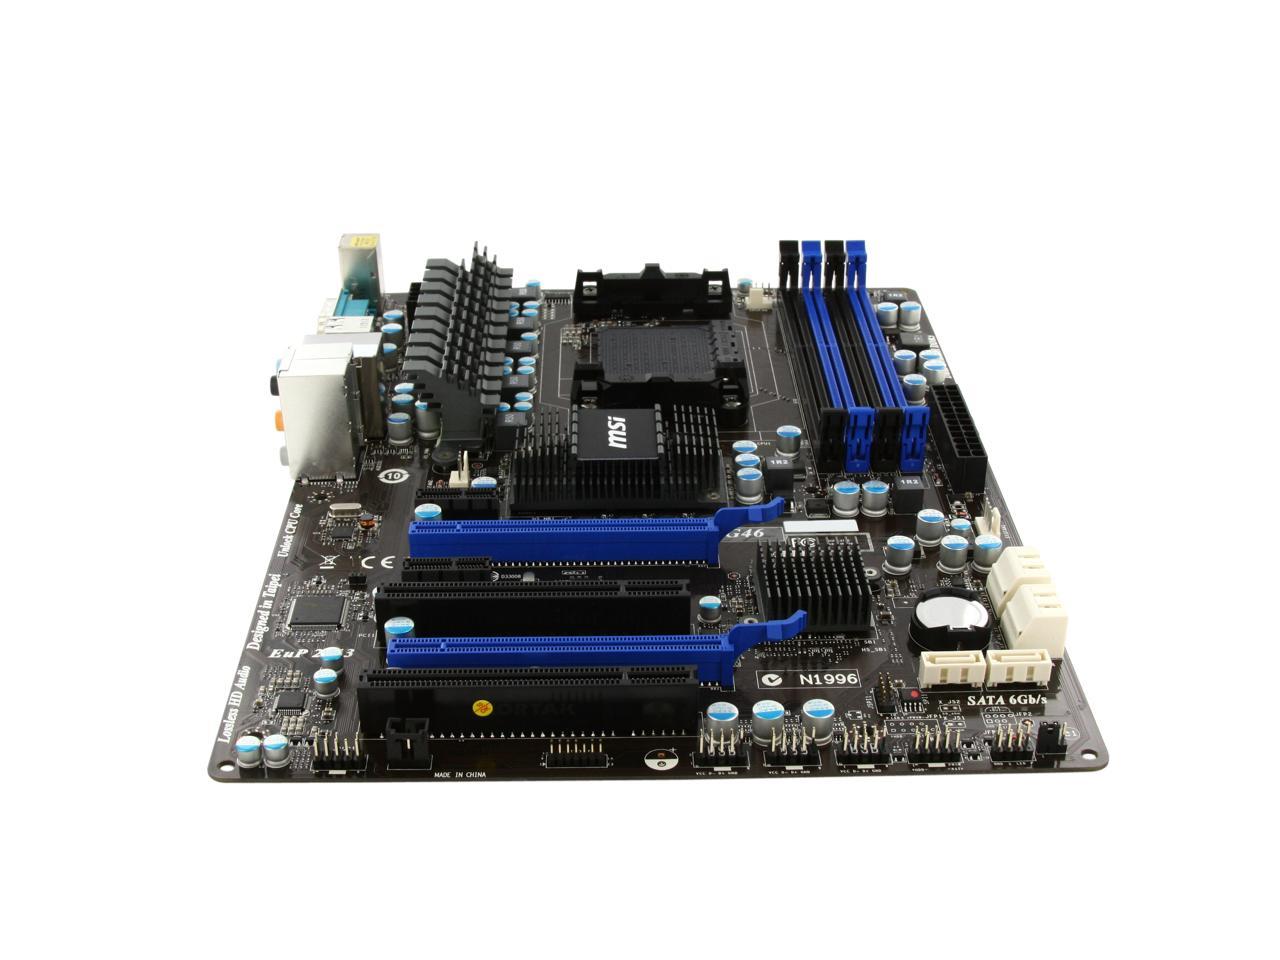 MSI 970A-G46 AM3+/AM3 ATX AMD Motherboard with UEFI BIOS - Newegg.ca